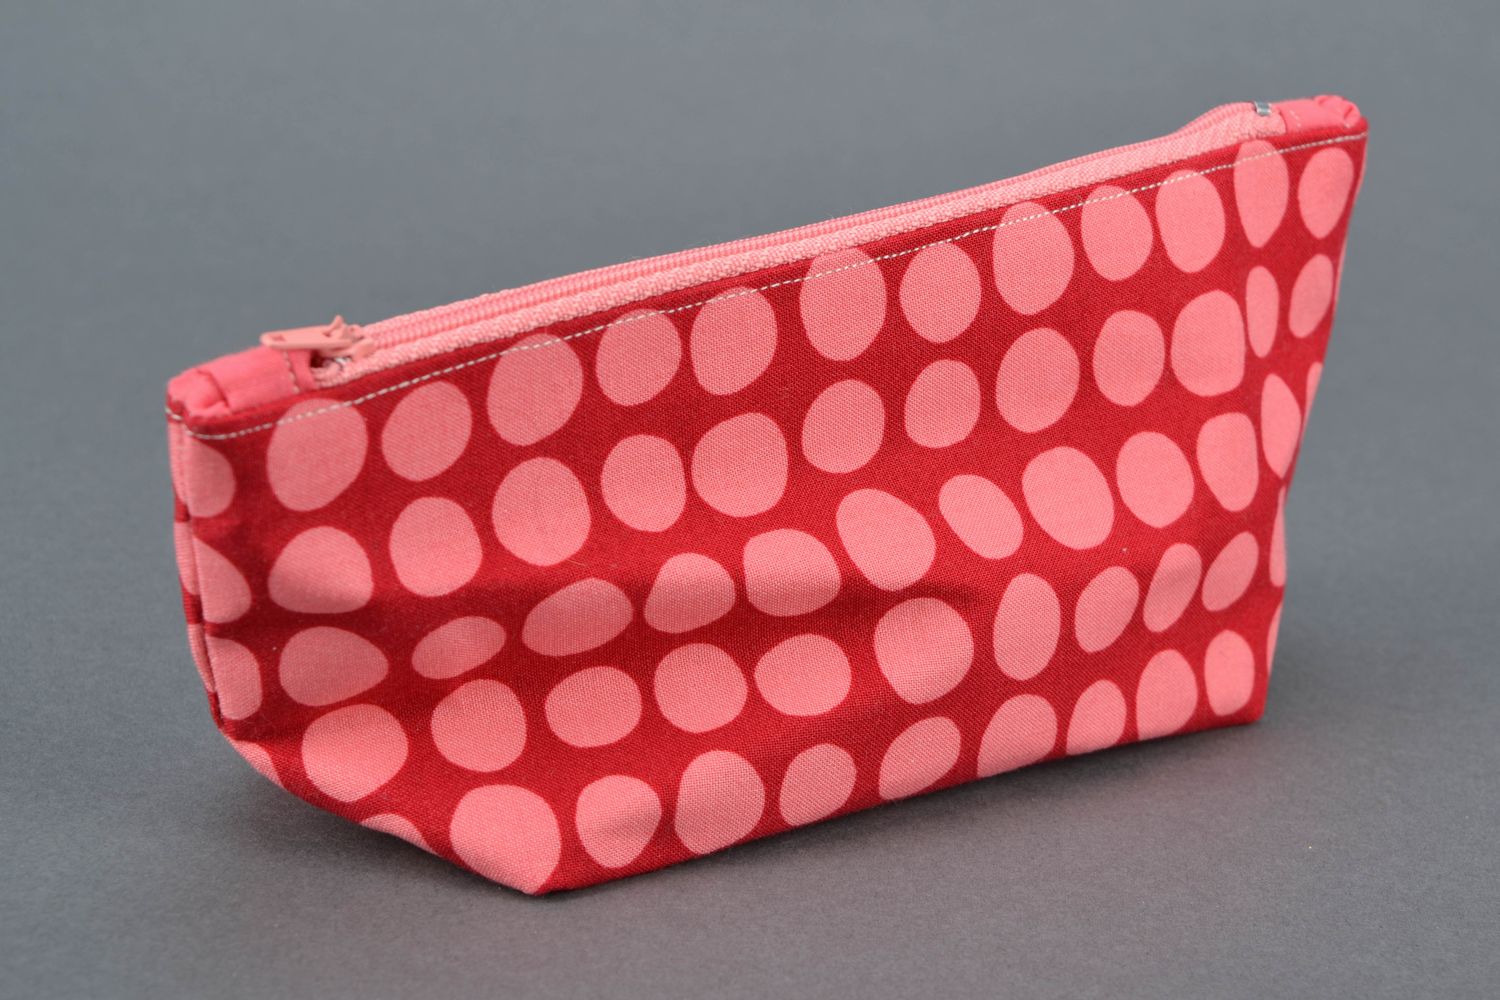 Handmade cosmetic bag sewn of polka dot fabric photo 3